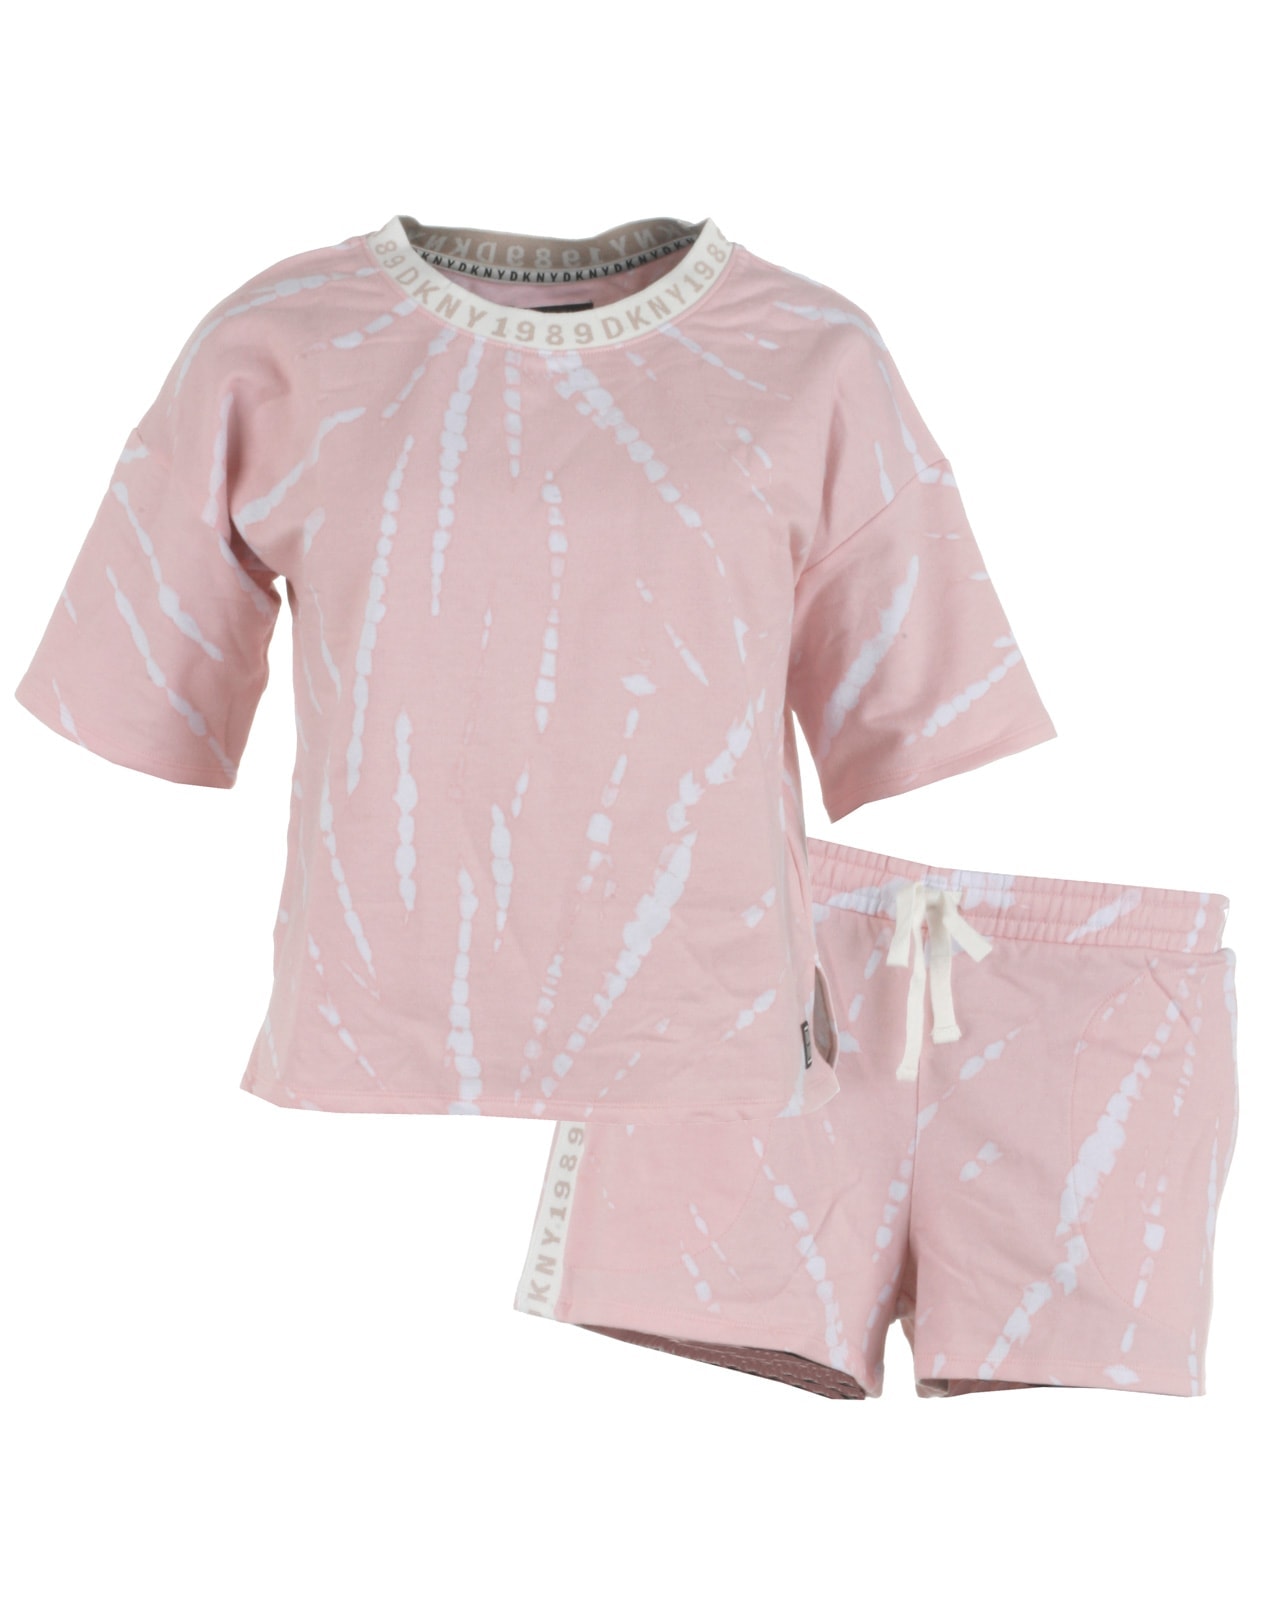 Lyserødt pyjamassæt med hvidt batikprint fra DKNY, model YI2922472-664. Sættet er med shorts og t-shirts - køb på umame.dkivrypink